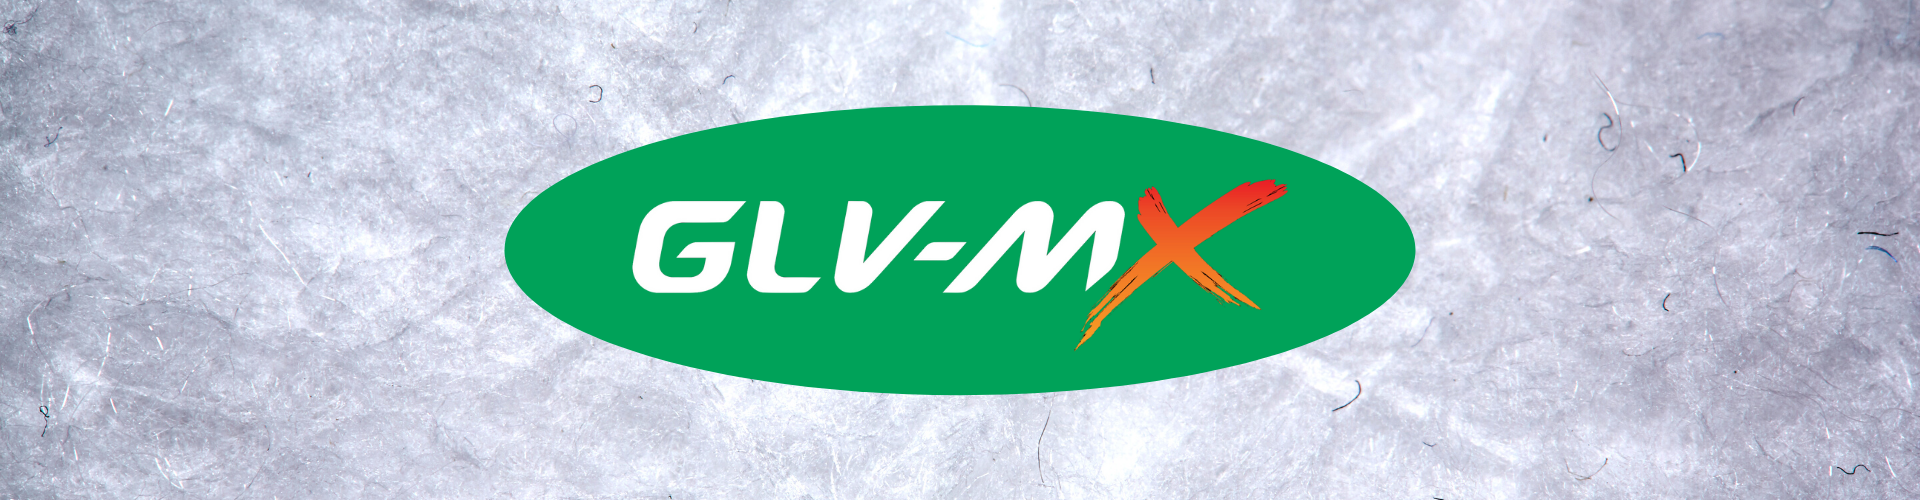 GLV-MX insulation material